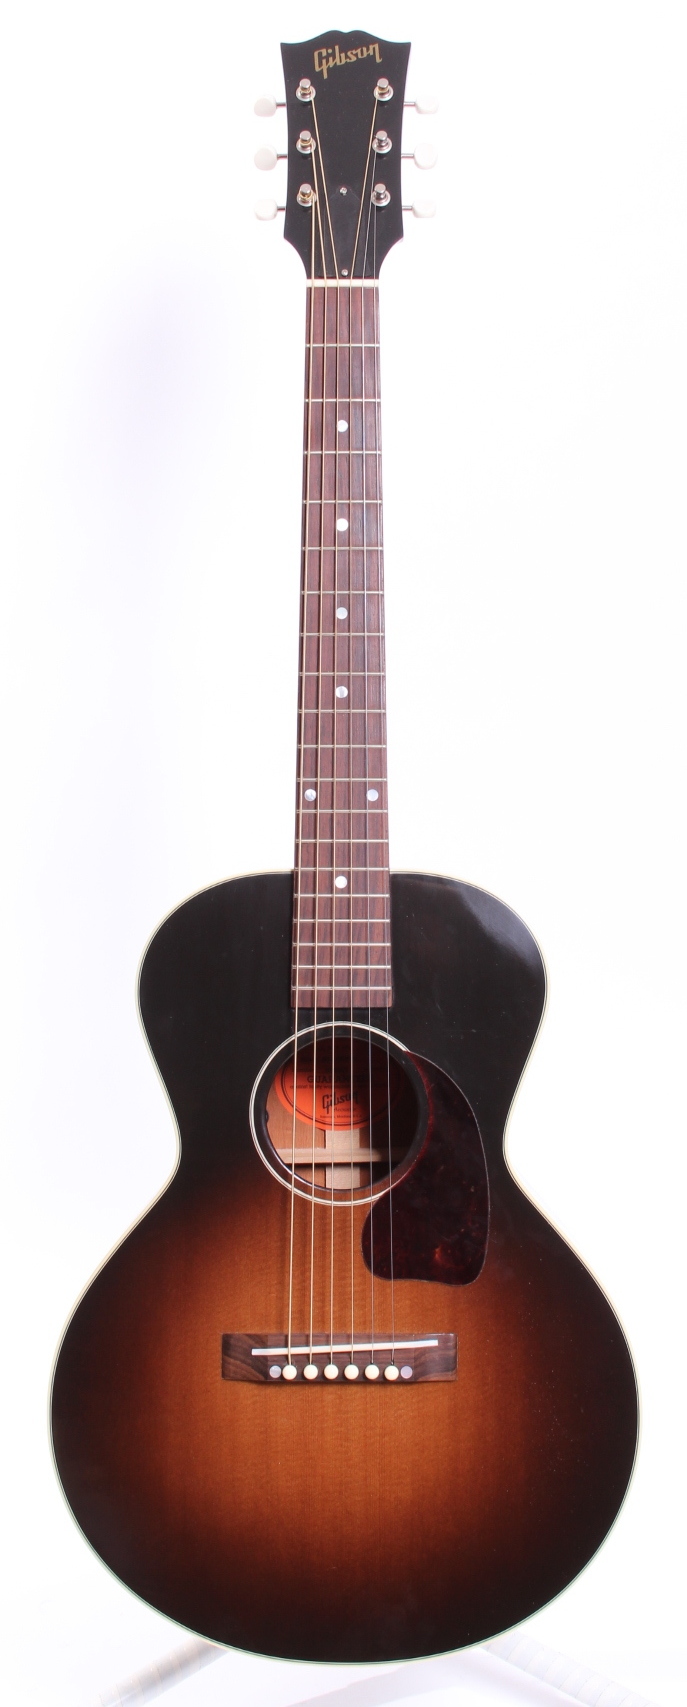 赤字超特価Gibson LG-2 3/4 Arlo Guthrie 2008年製 アコースティックギター ギブソン ギブソン